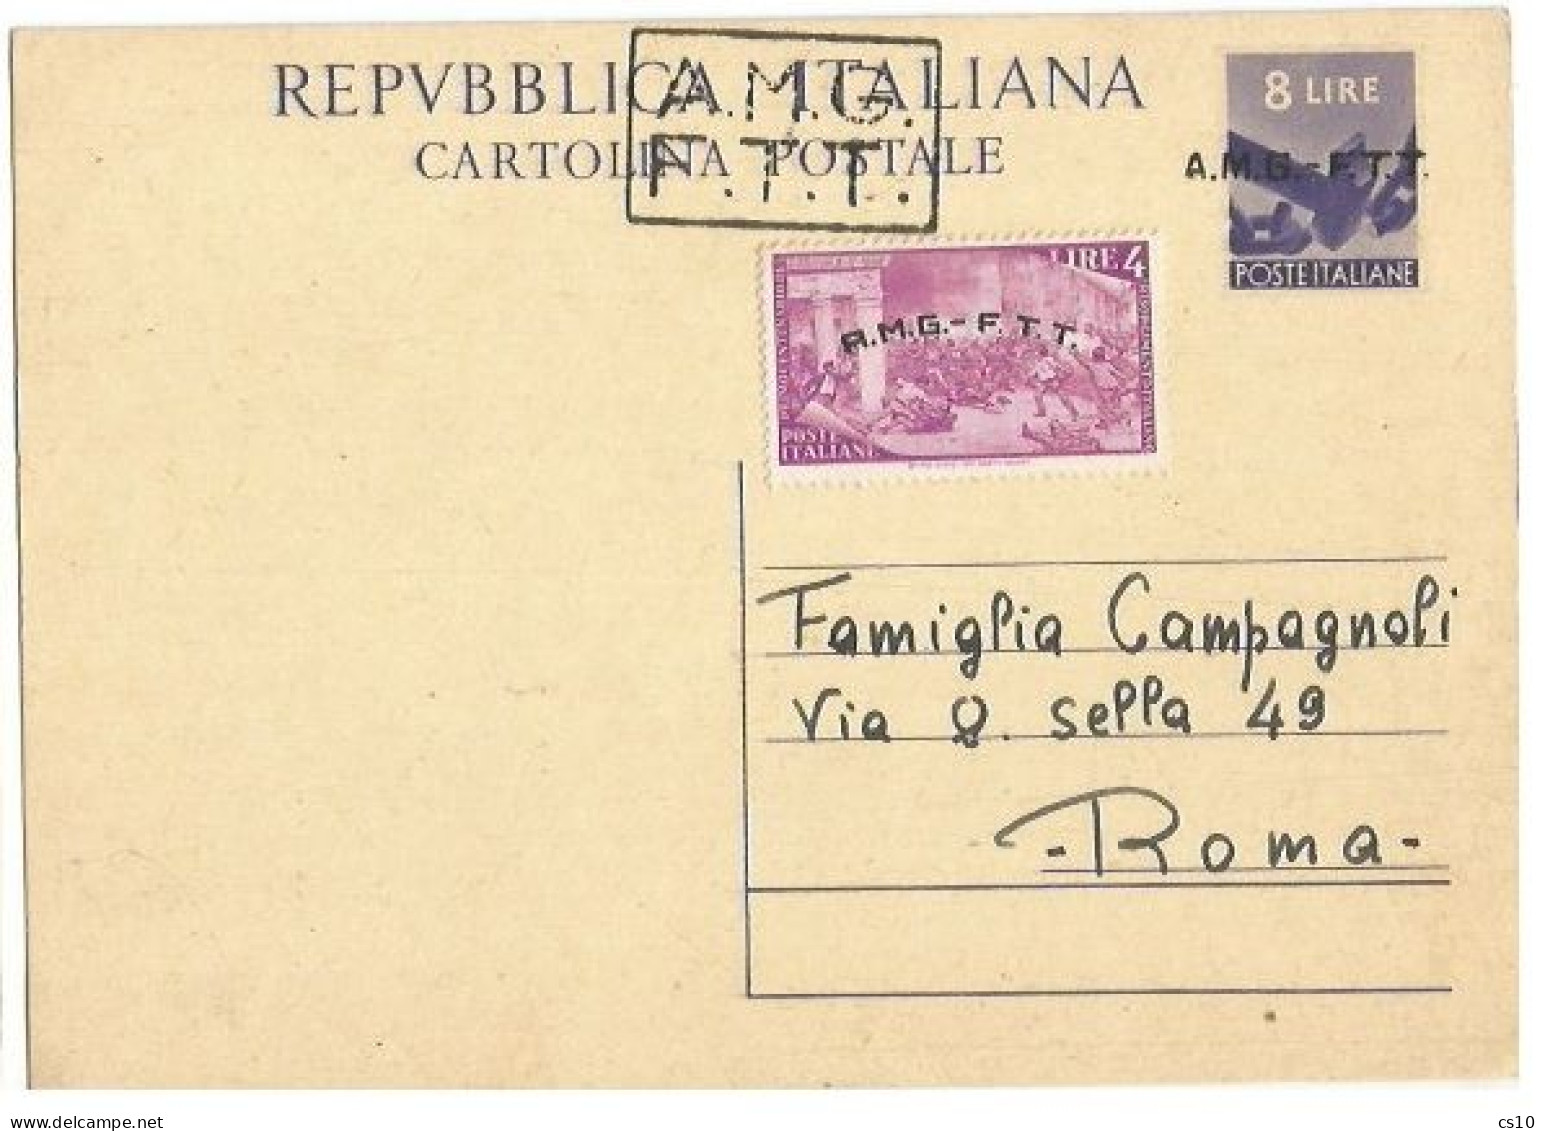 Trieste "A" AMG-FTT 1947 Cart.Postale Democratica L.8 #C2A Soprast.A+B + Risorgimento L.4 Nuova Intestata NON VIAGGIATA - Storia Postale